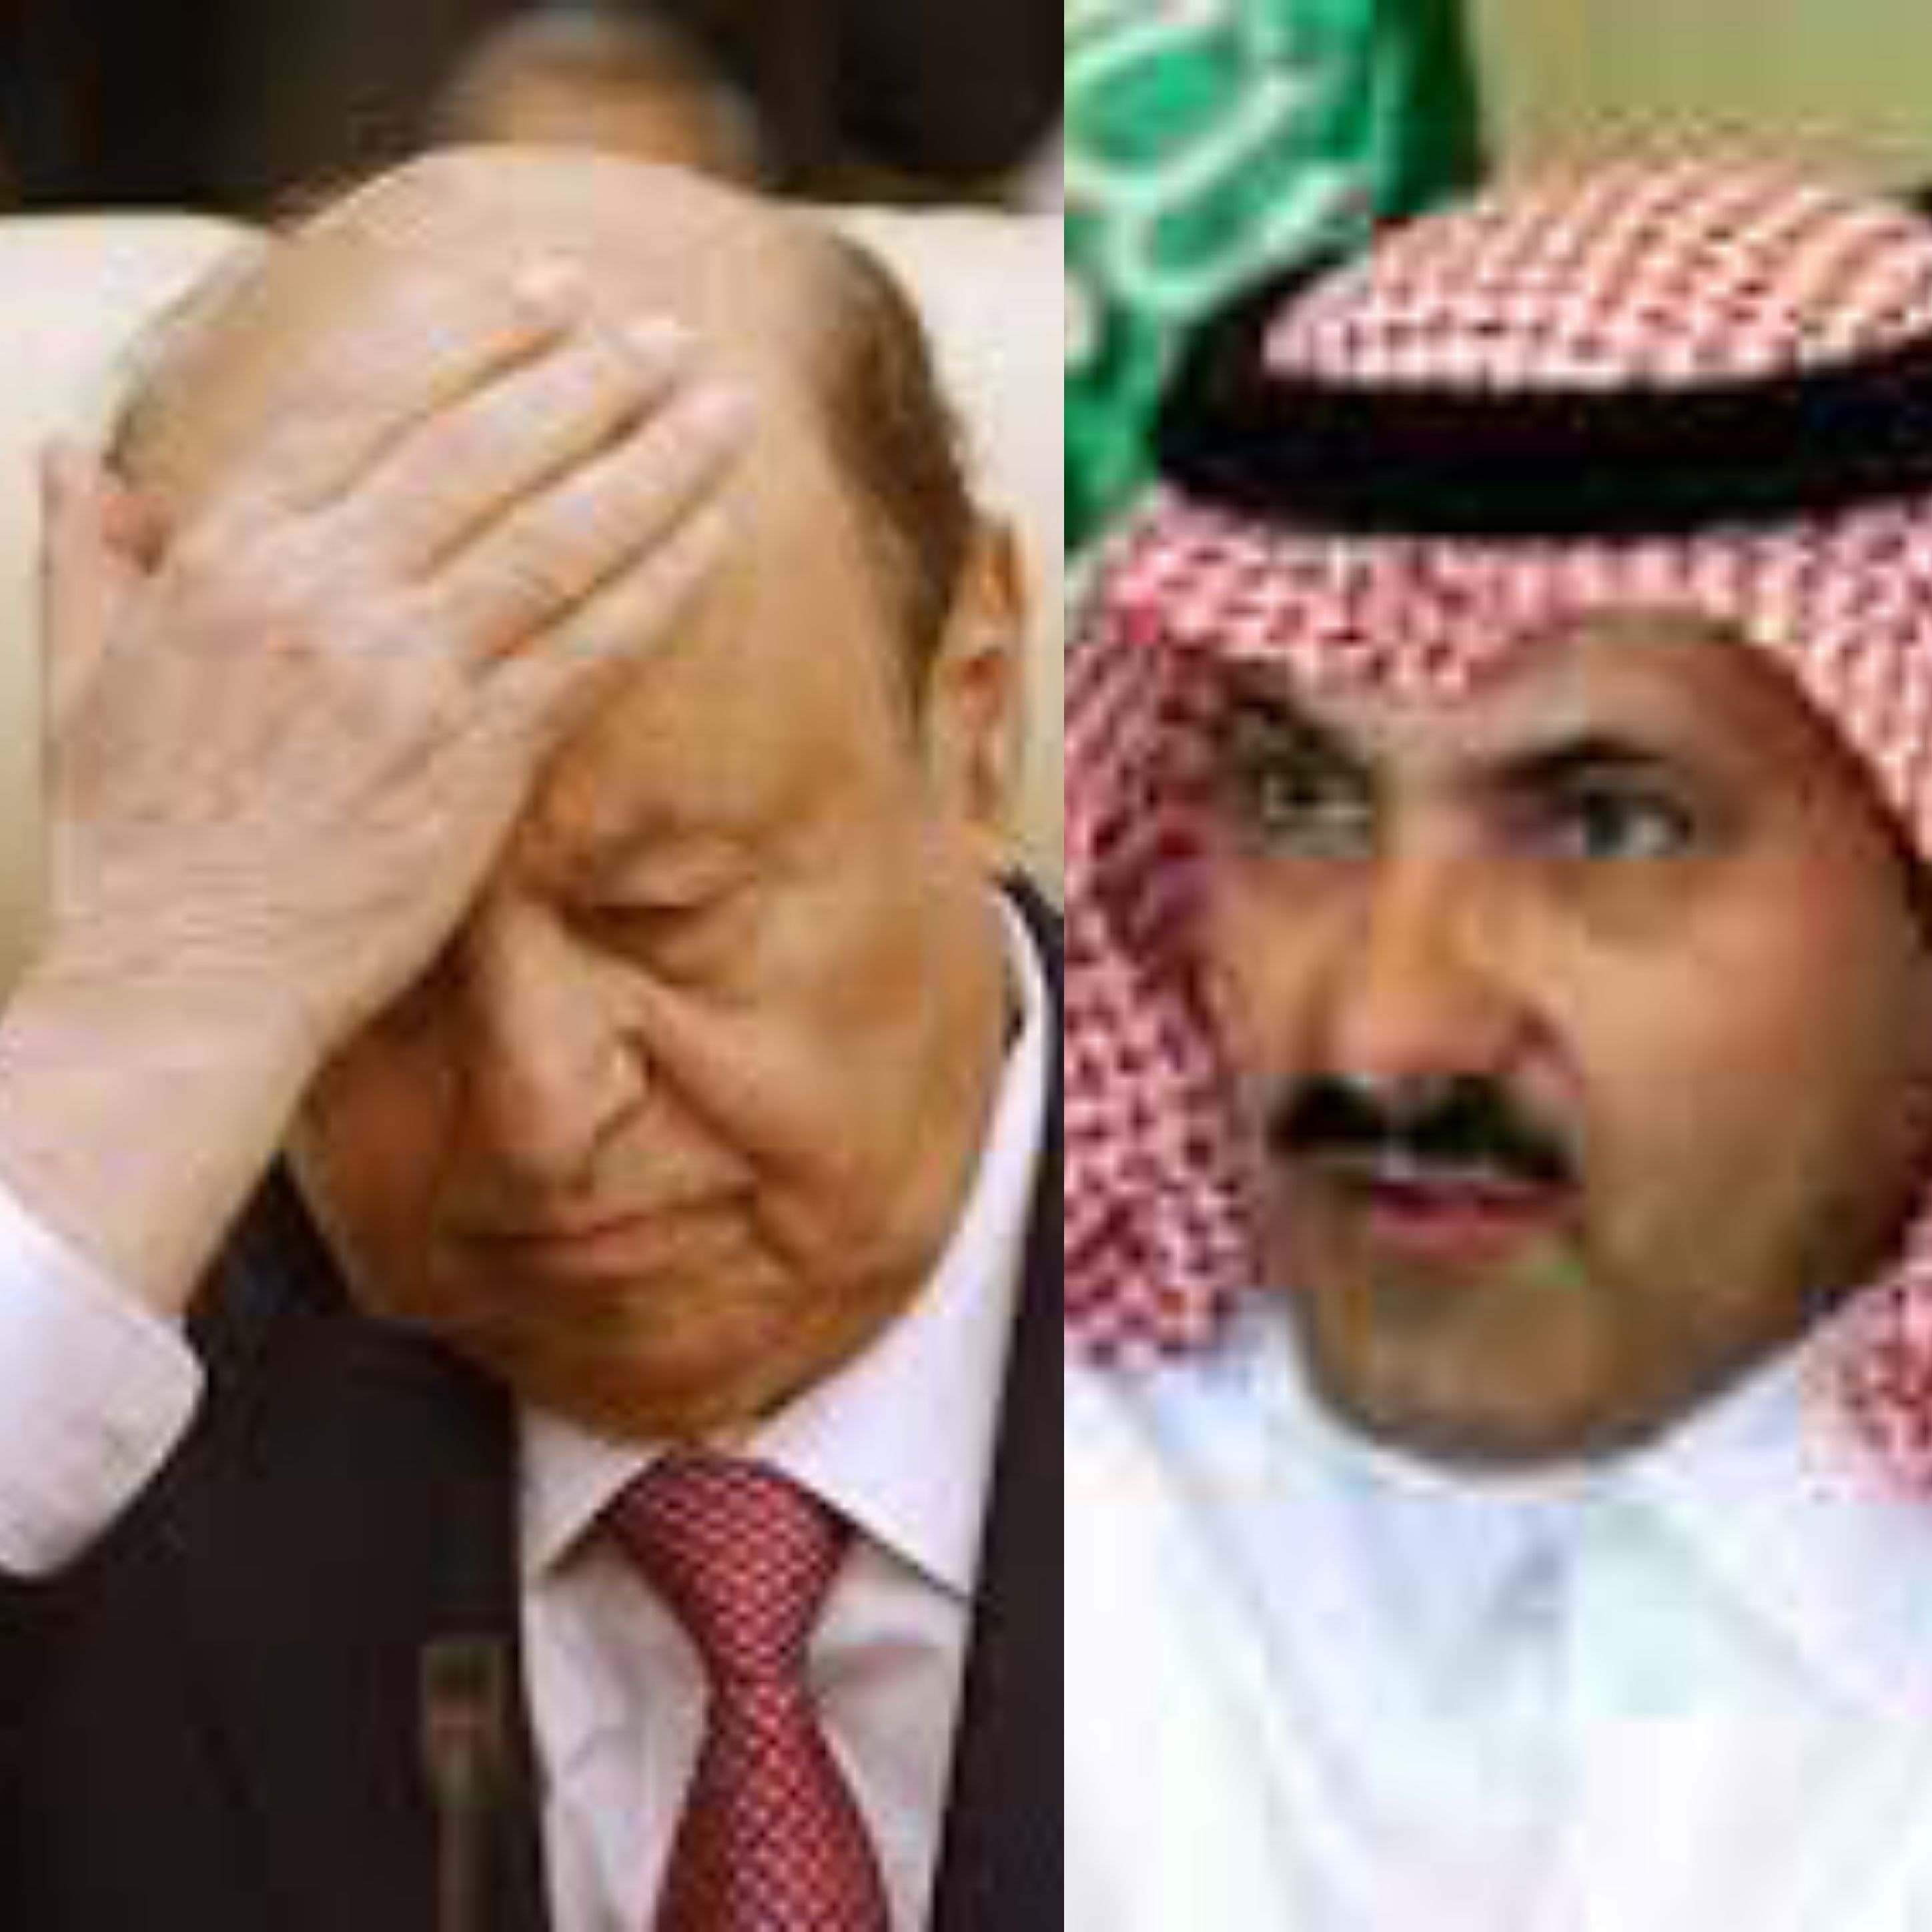 عاجل وخطير السفير السعودي يعتدي على الرئيس هادي ويرميه بهذا الشيء في راسه تفاصيل